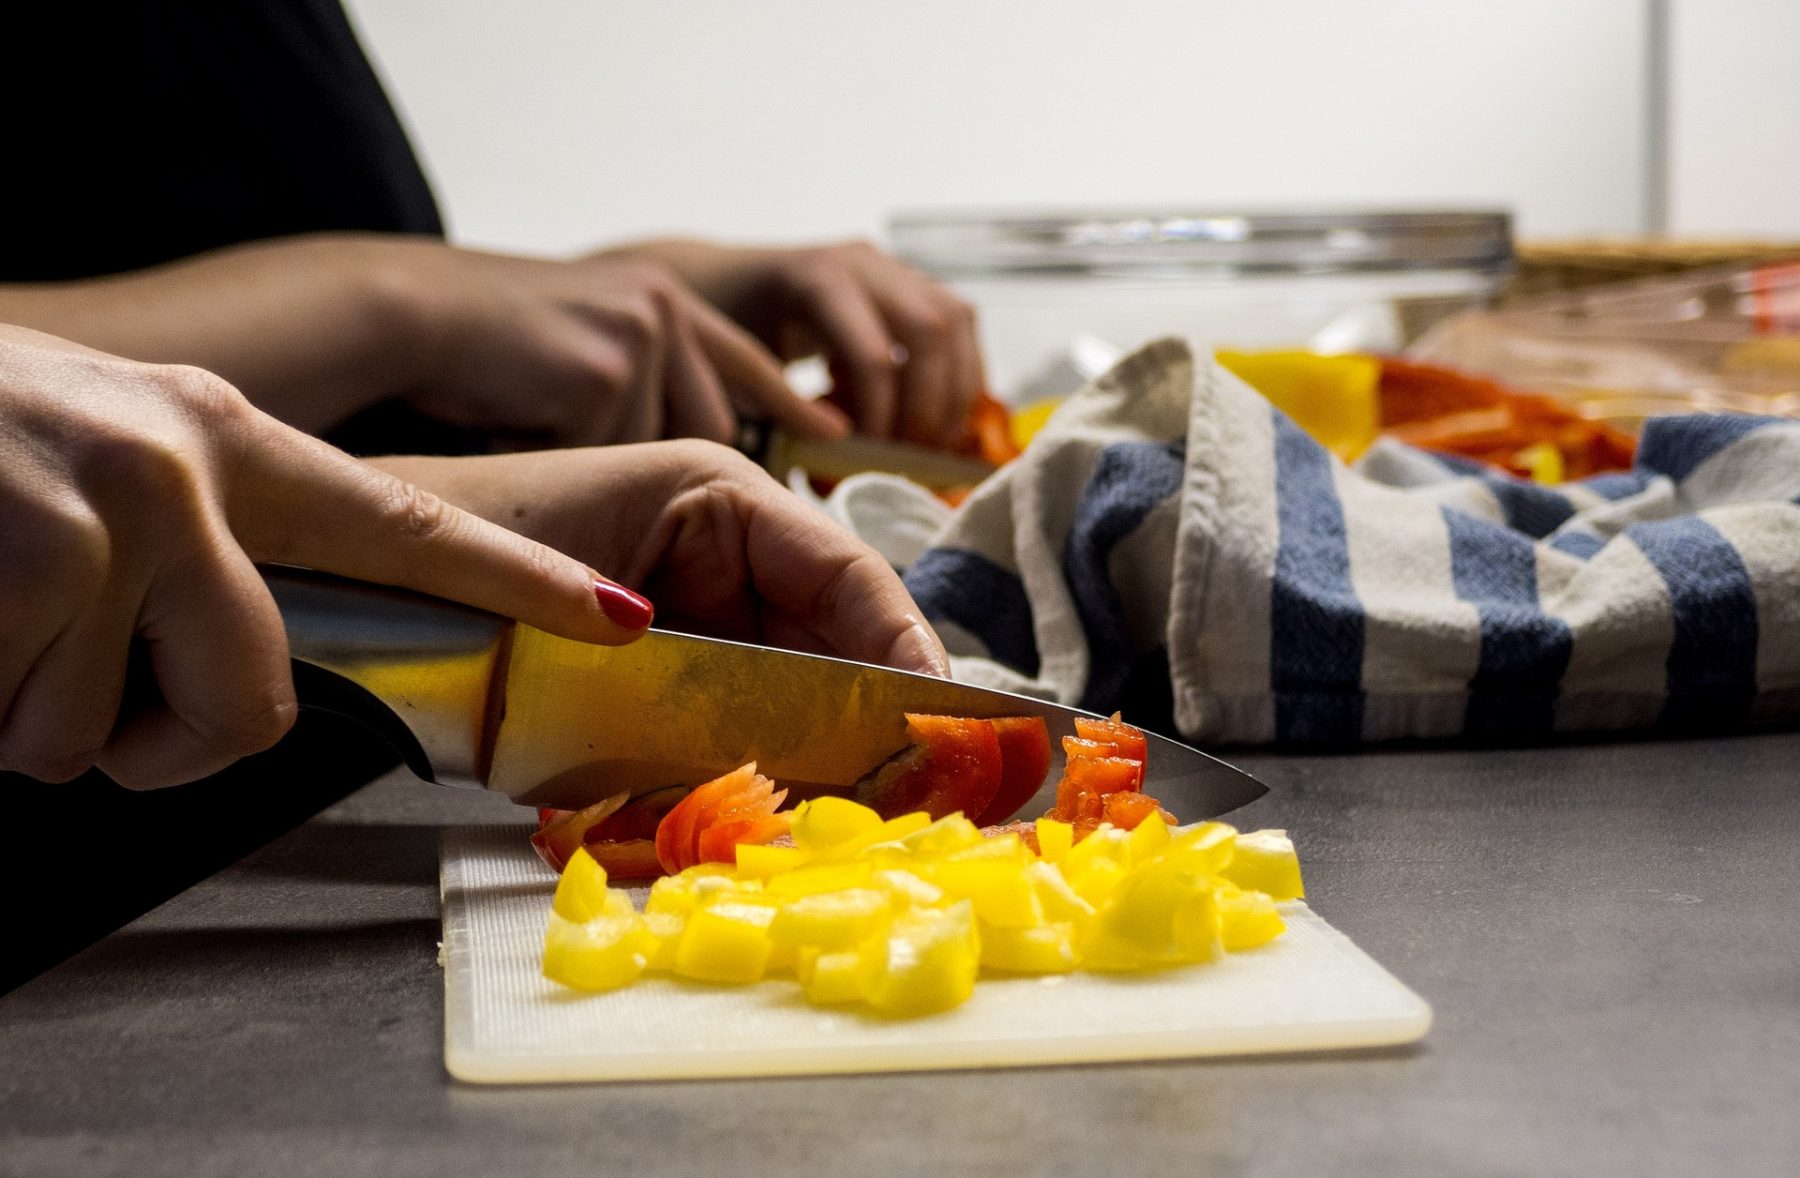 Αυτοφροντίδα μαγειρική: Λόγοι για να μαγειρεύεις στο σπίτι και όχι να τρως έξω